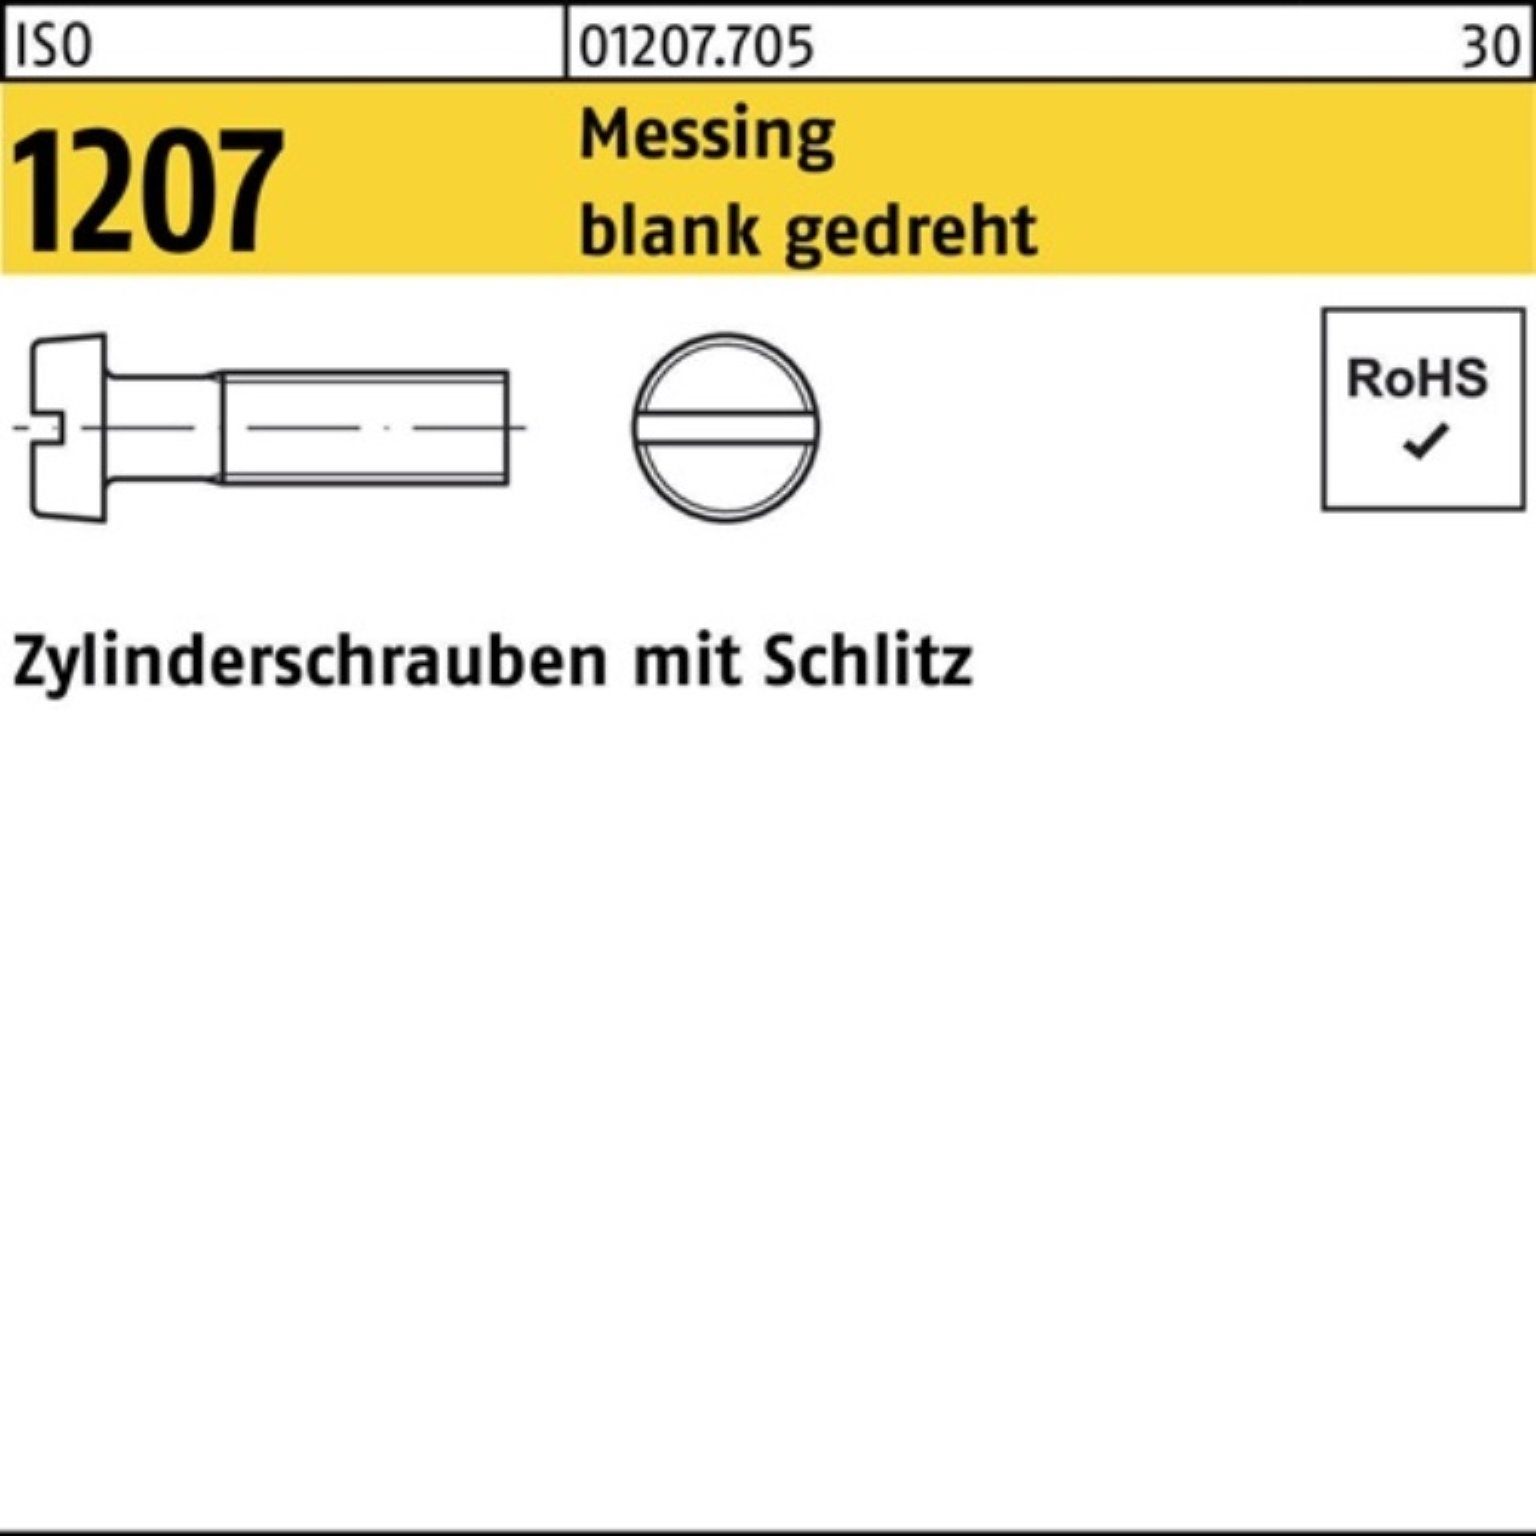 Zylinderschraube Schlitz ISO 100er gedre Pack Messing Reyher 1207 4 M1x Zylinderschraube blank